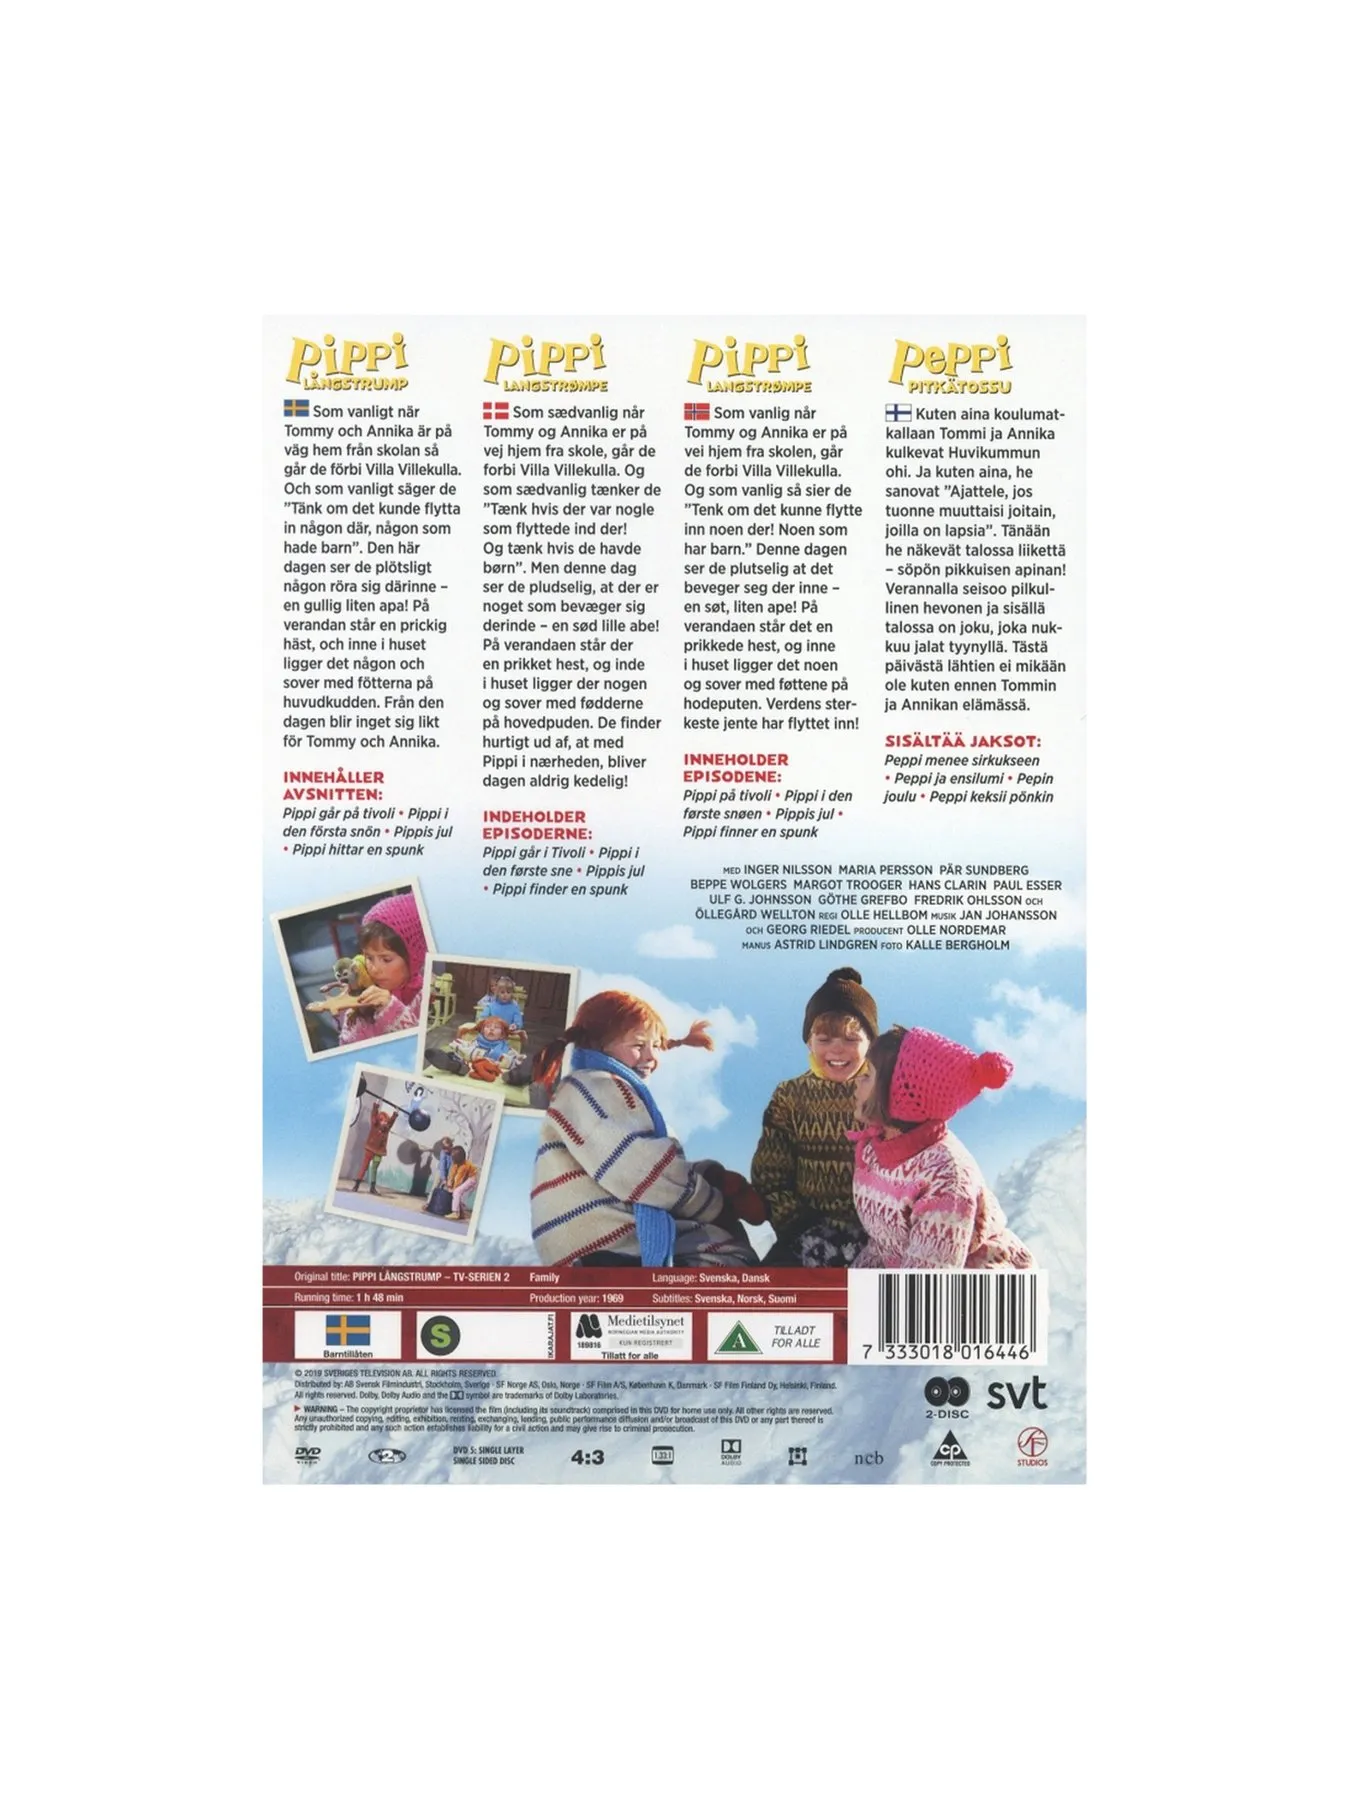 DVD Pippi Longstocking TV Series Part 2 New